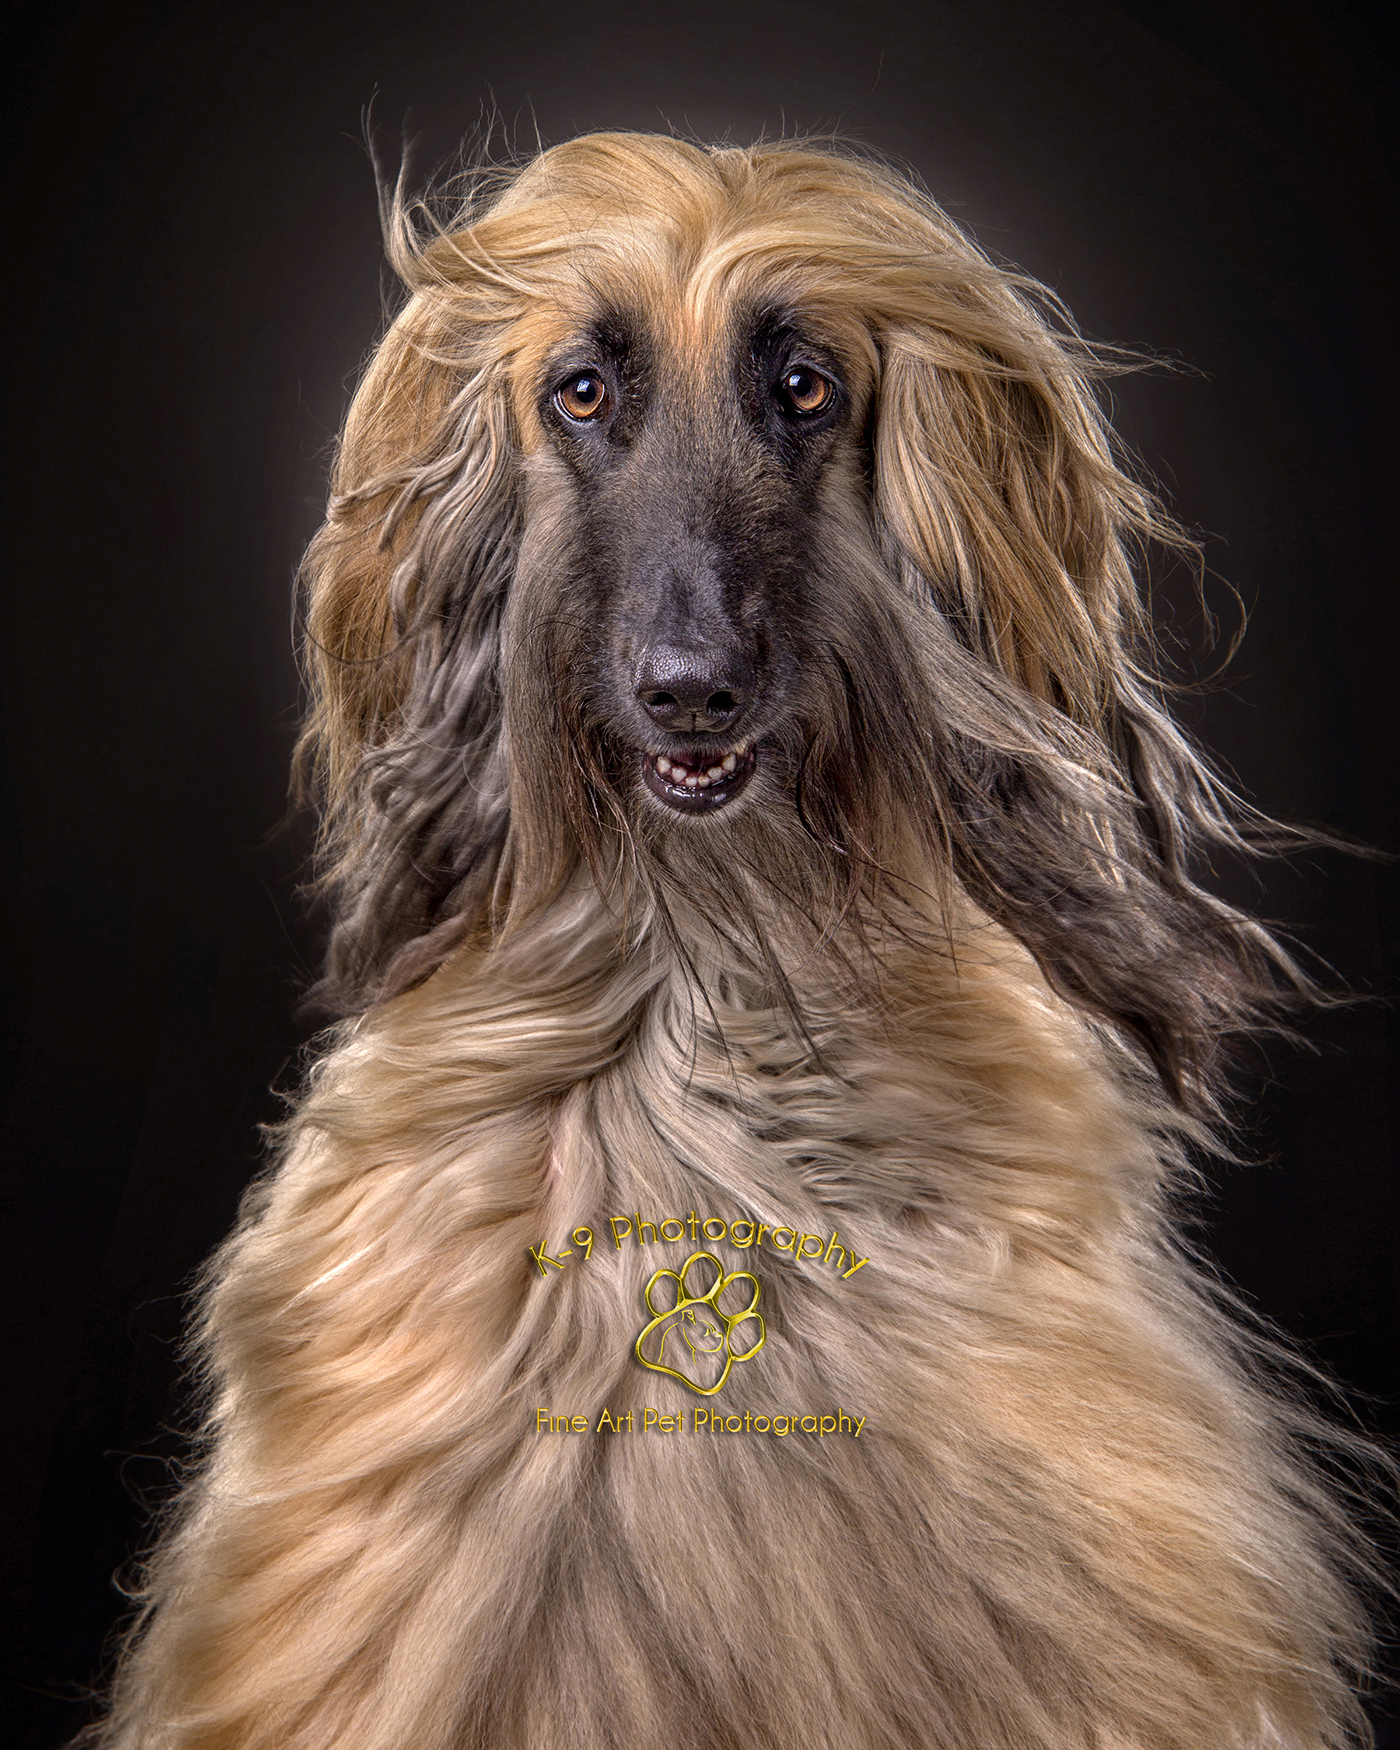 Amazing dog photography | Dog photography by k-9 photography